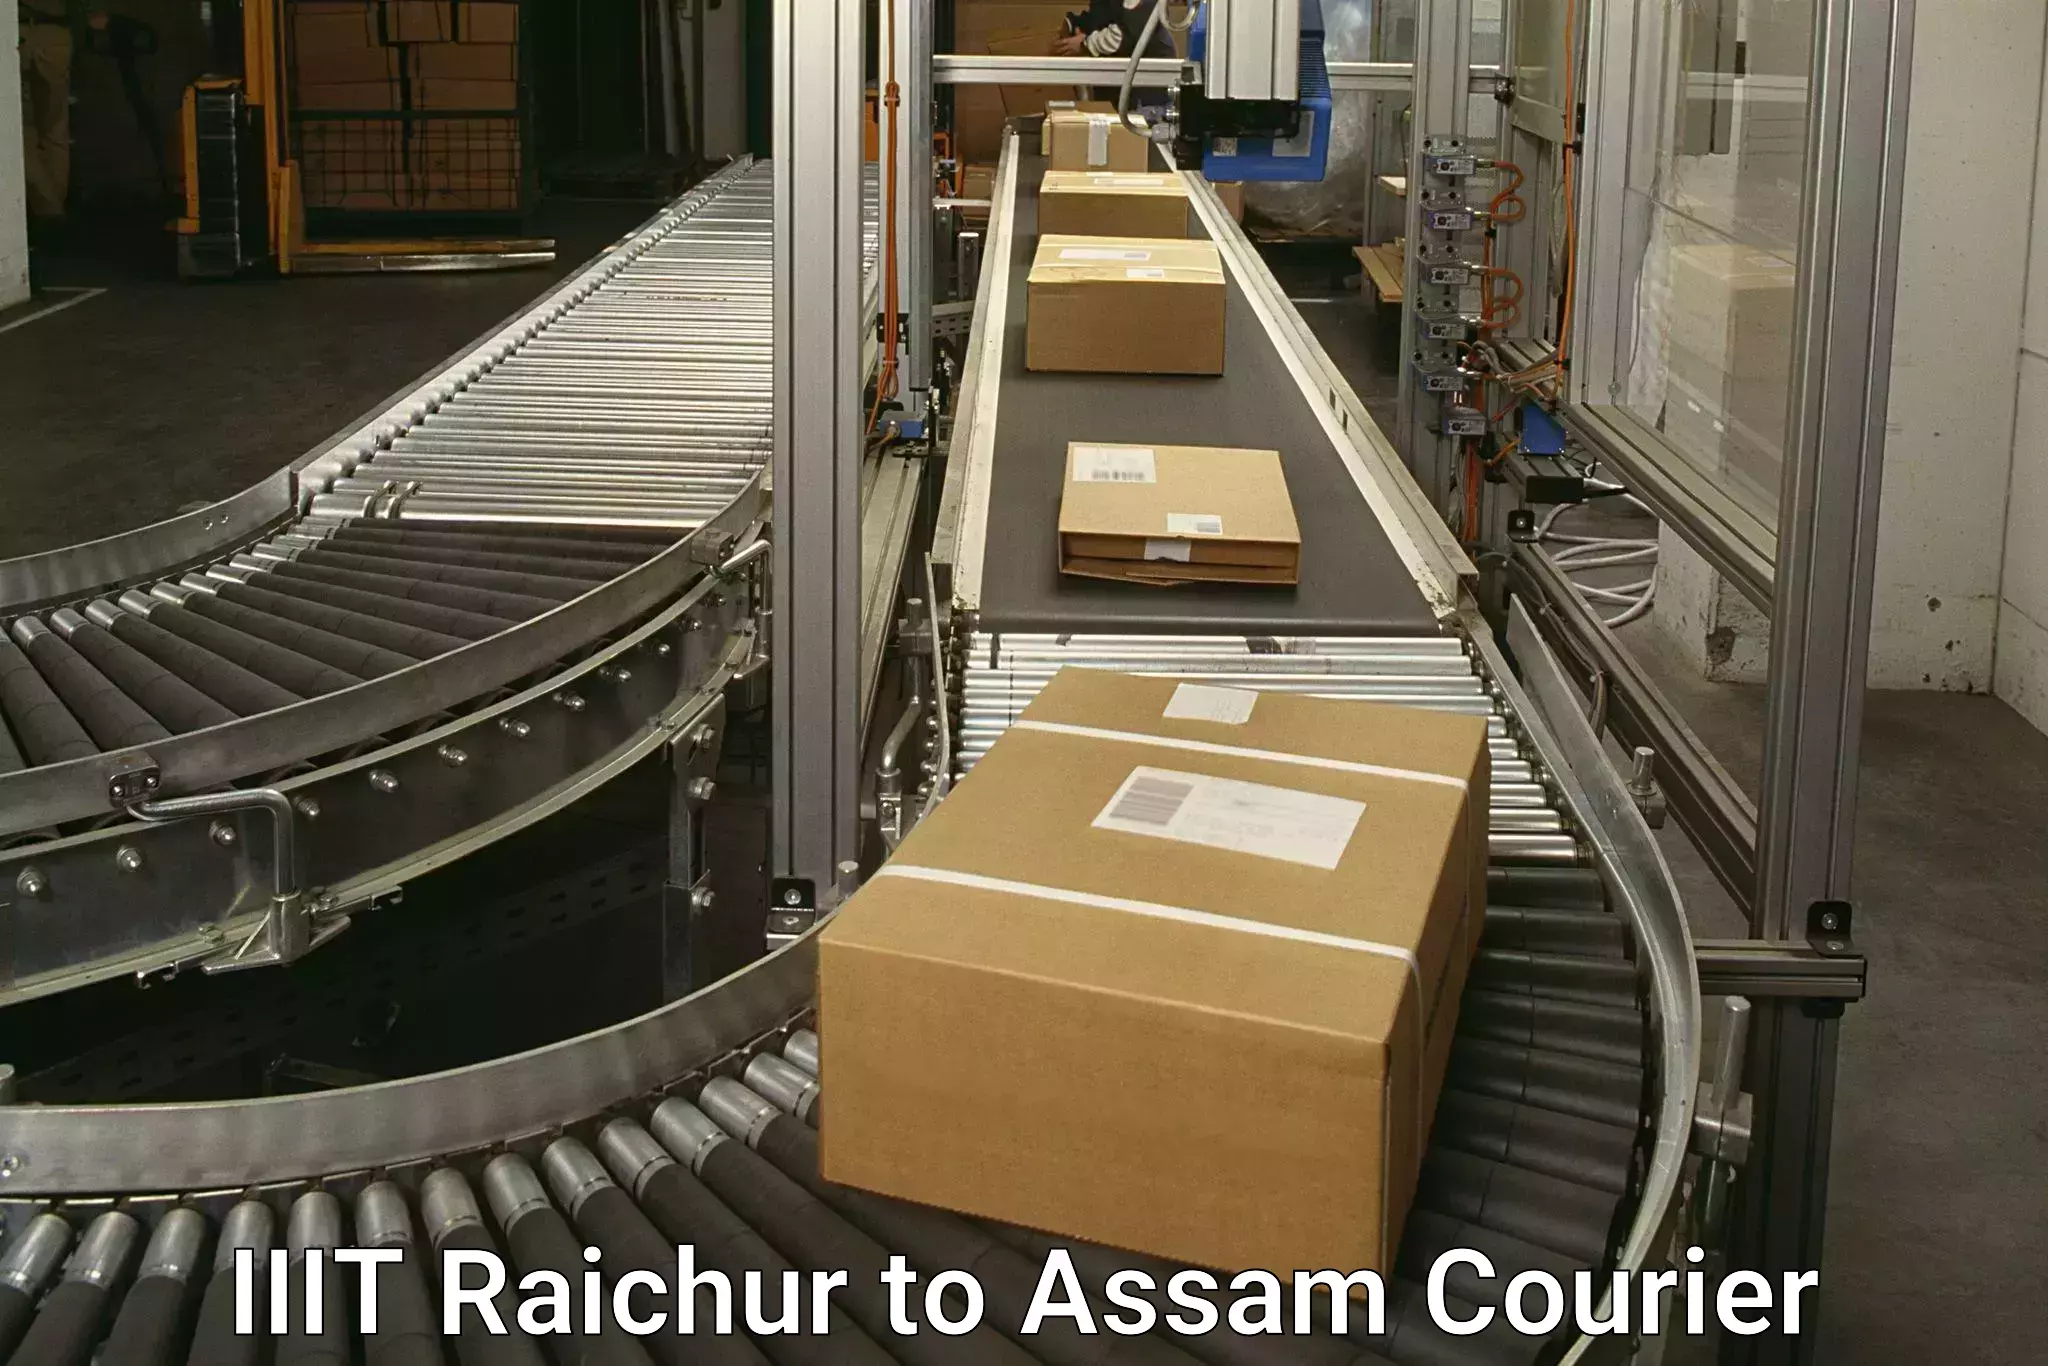 Custom courier packaging IIIT Raichur to Lala Assam